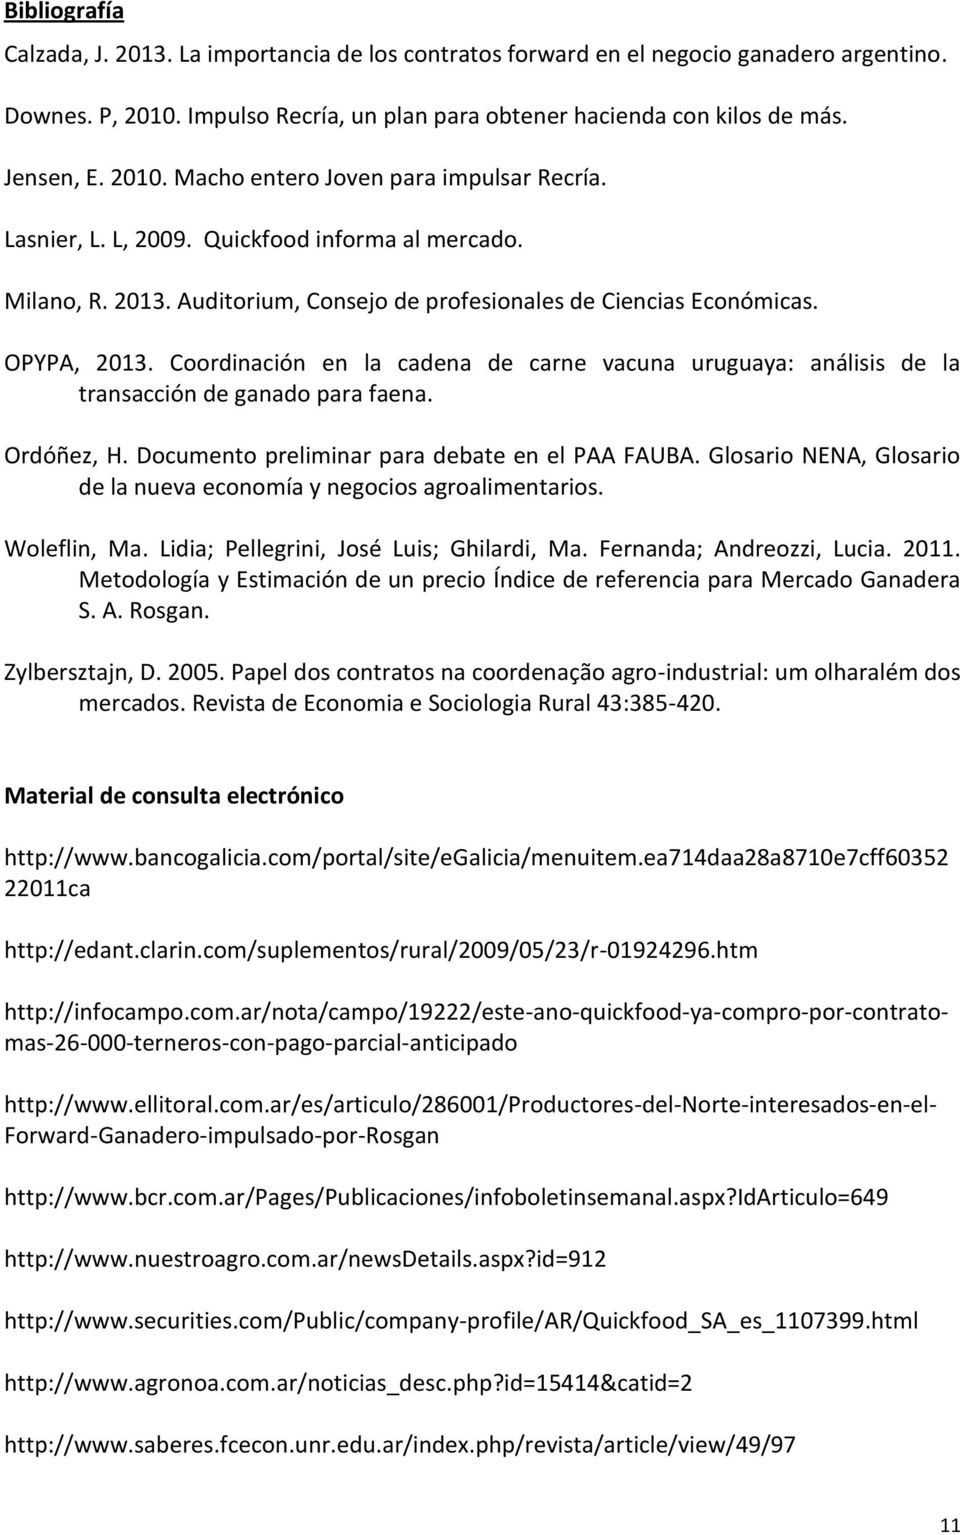 Coordinación en la cadena de carne vacuna uruguaya: análisis de la transacción de ganado para faena. Ordóñez, H. Documento preliminar para debate en el PAA FAUBA.